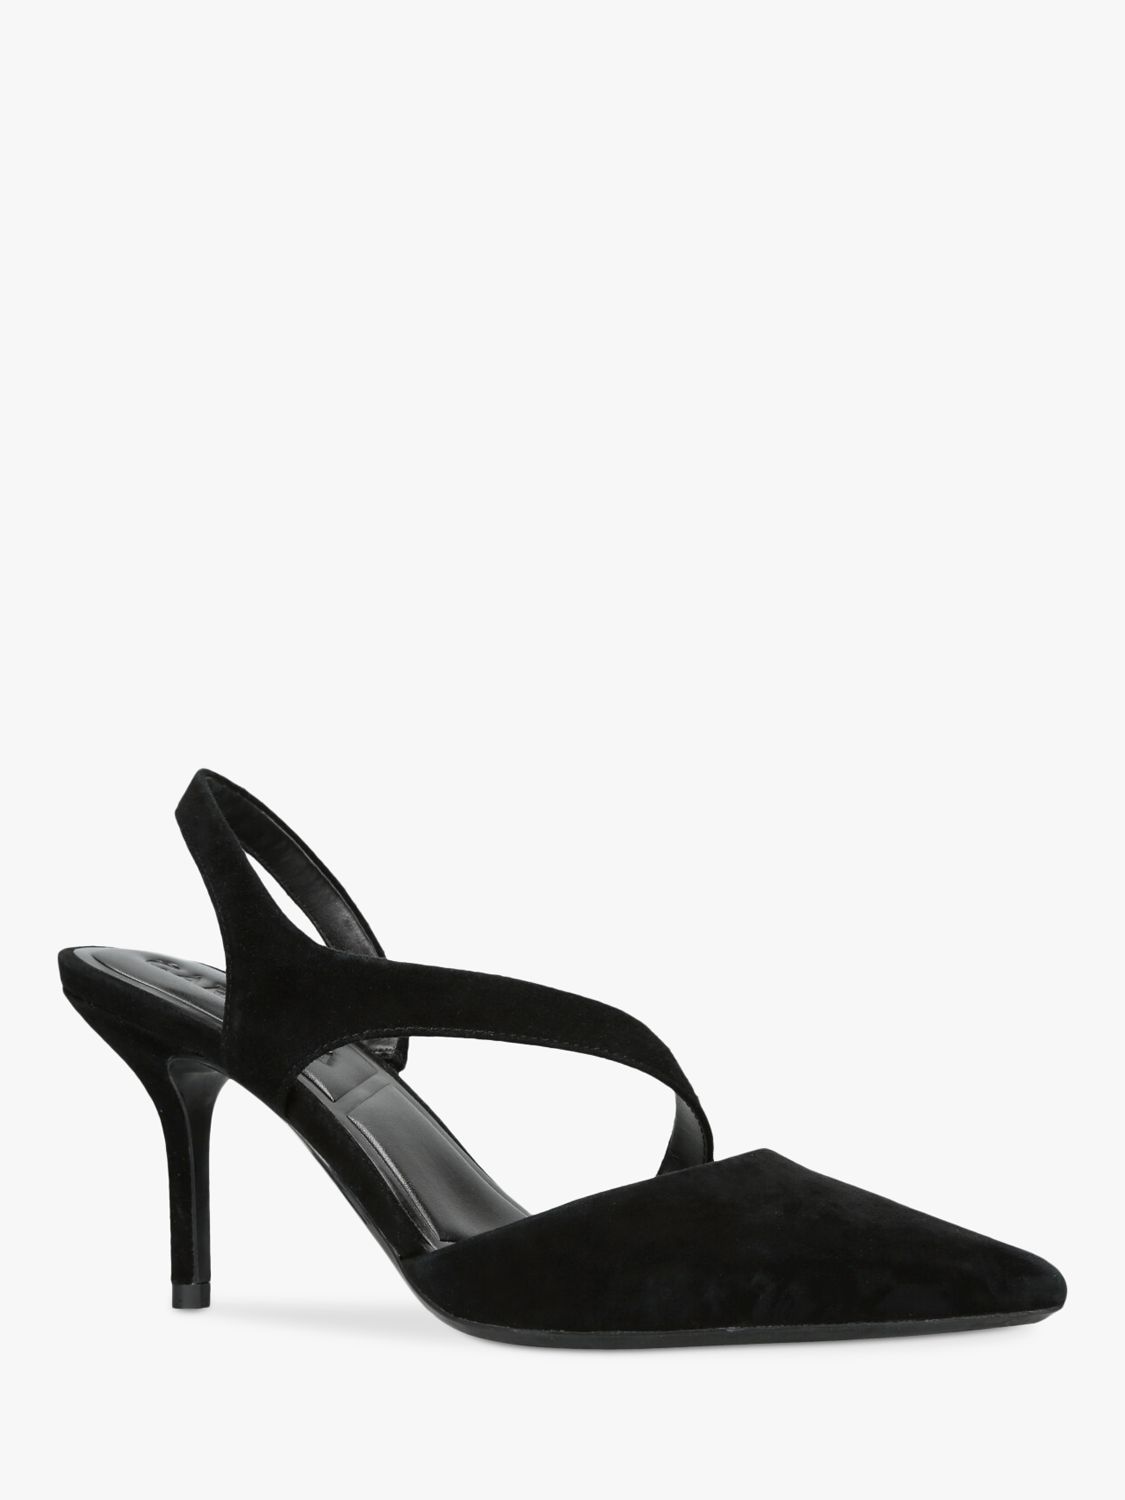 Carvela Symmetry Suede Court Shoes, Black at John Lewis & Partners